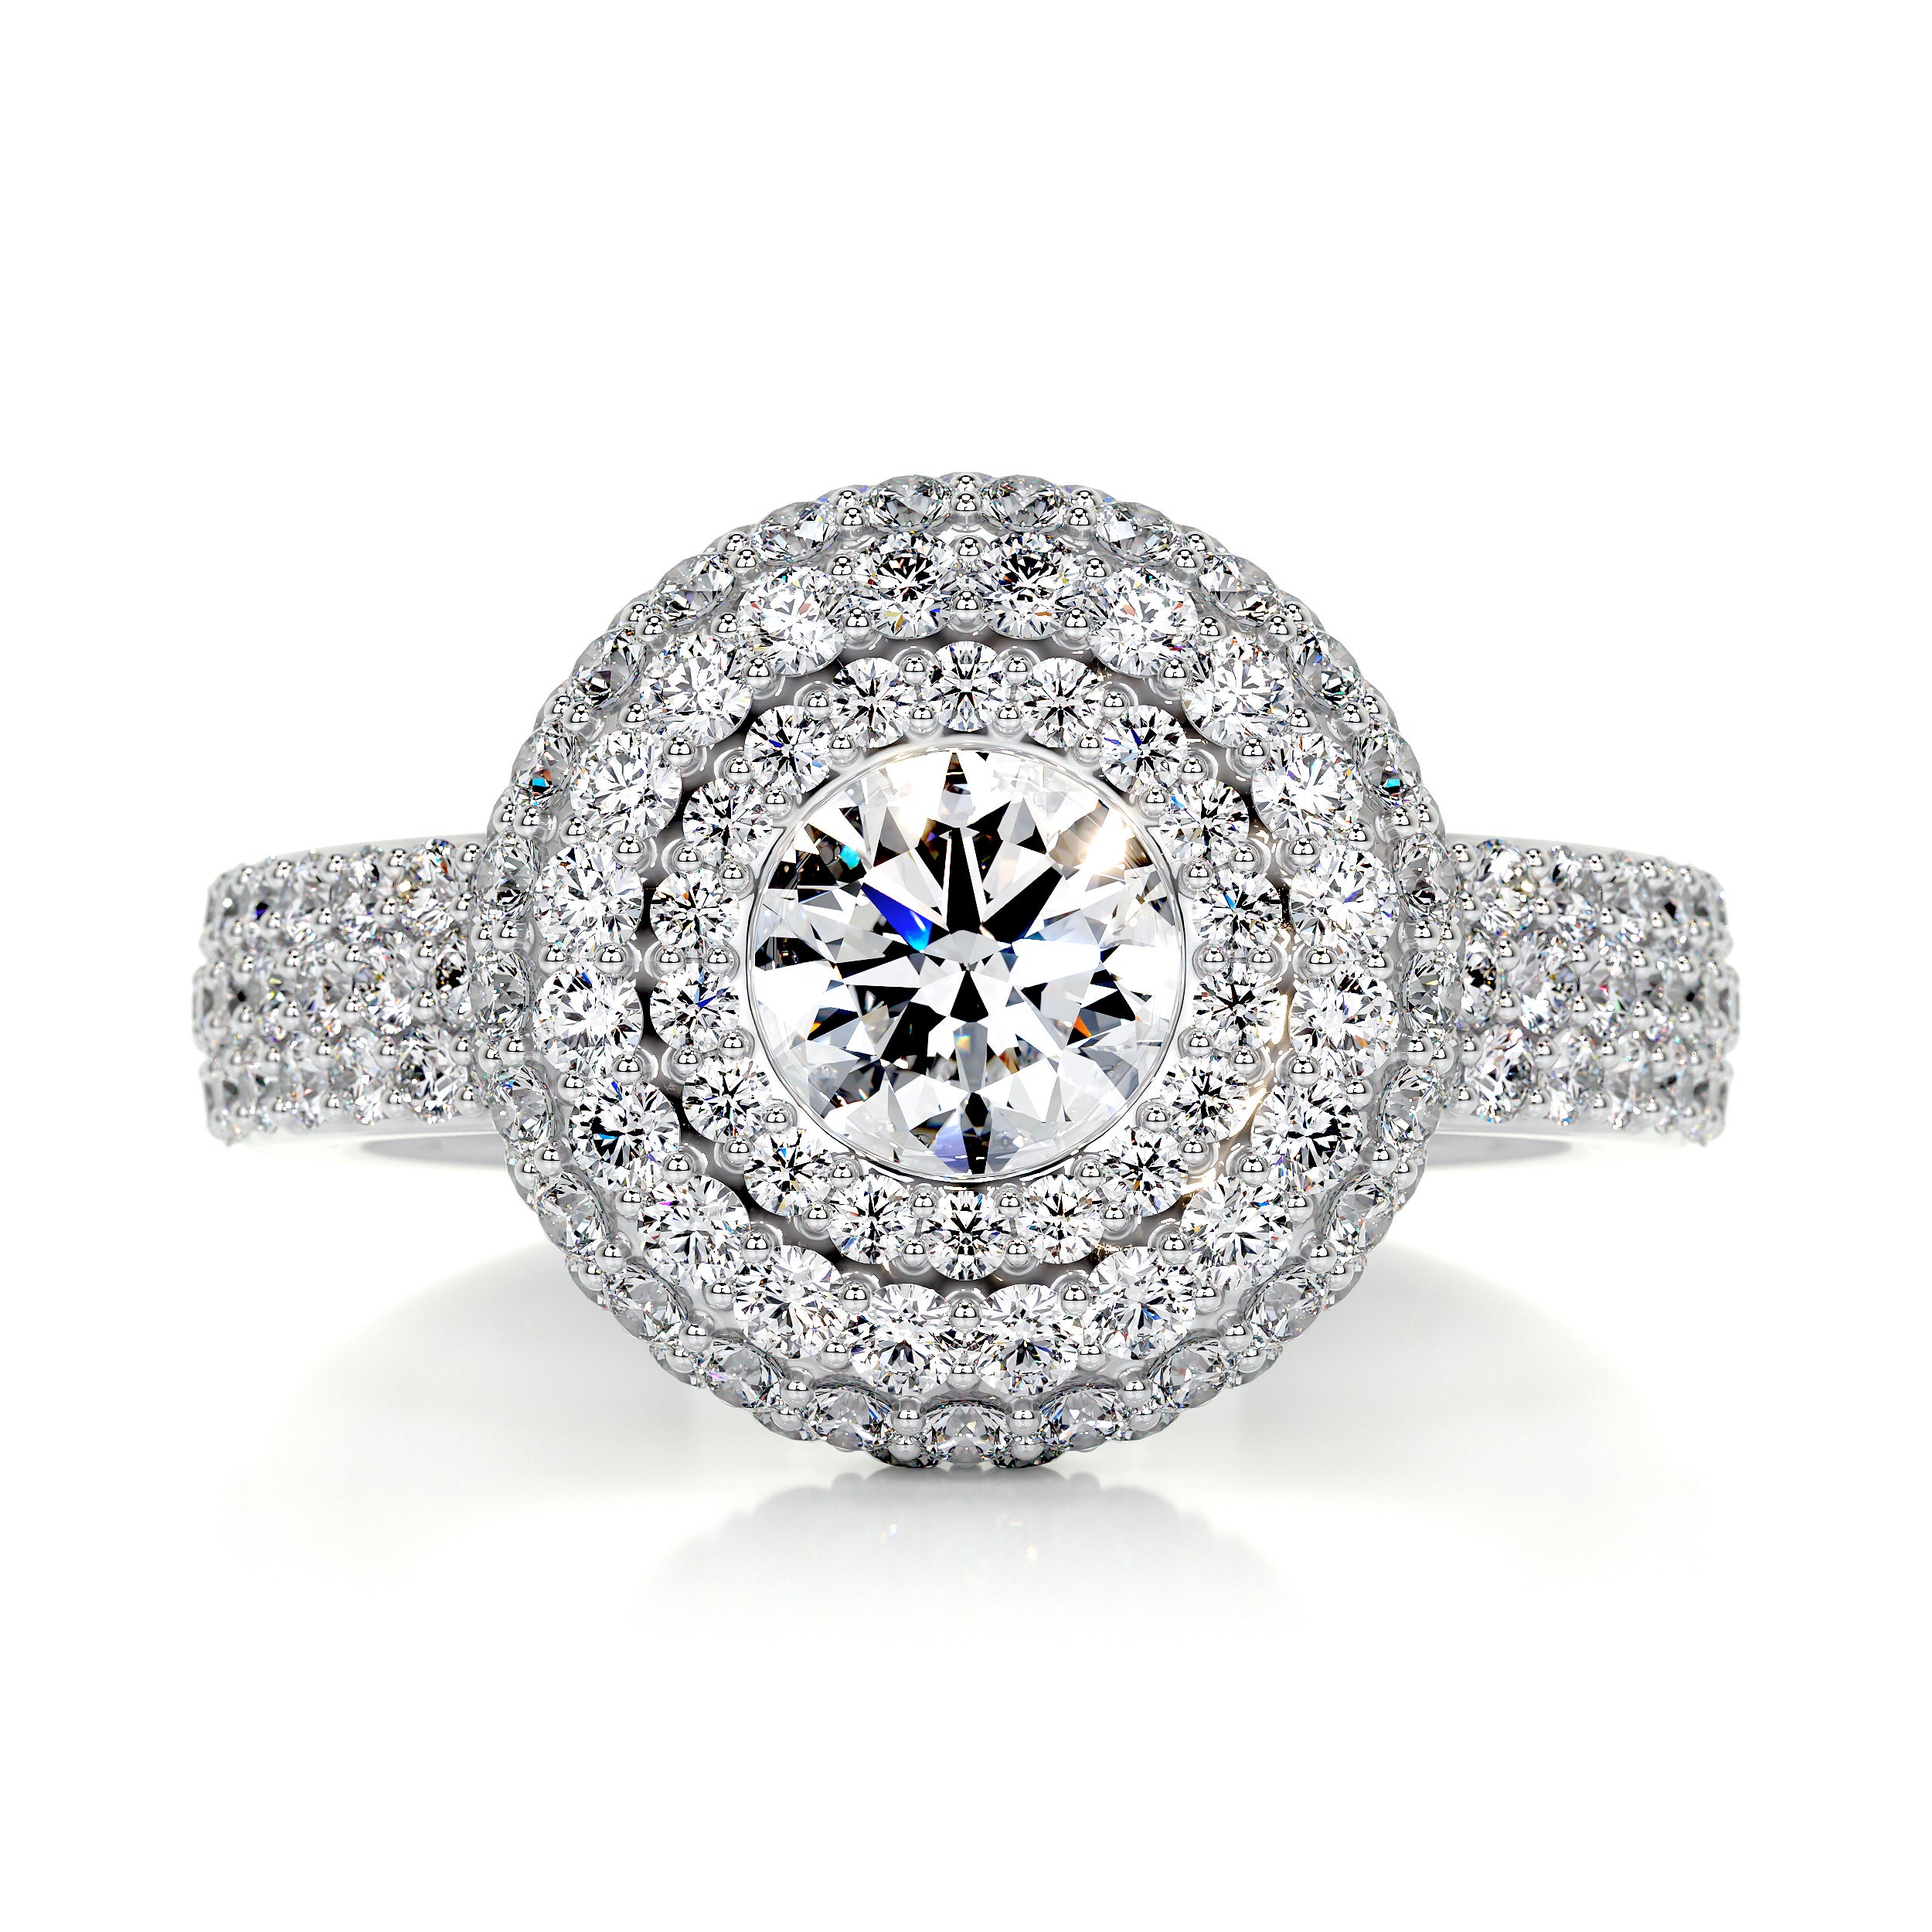 Reagan Diamond Engagement Ring -14K White Gold